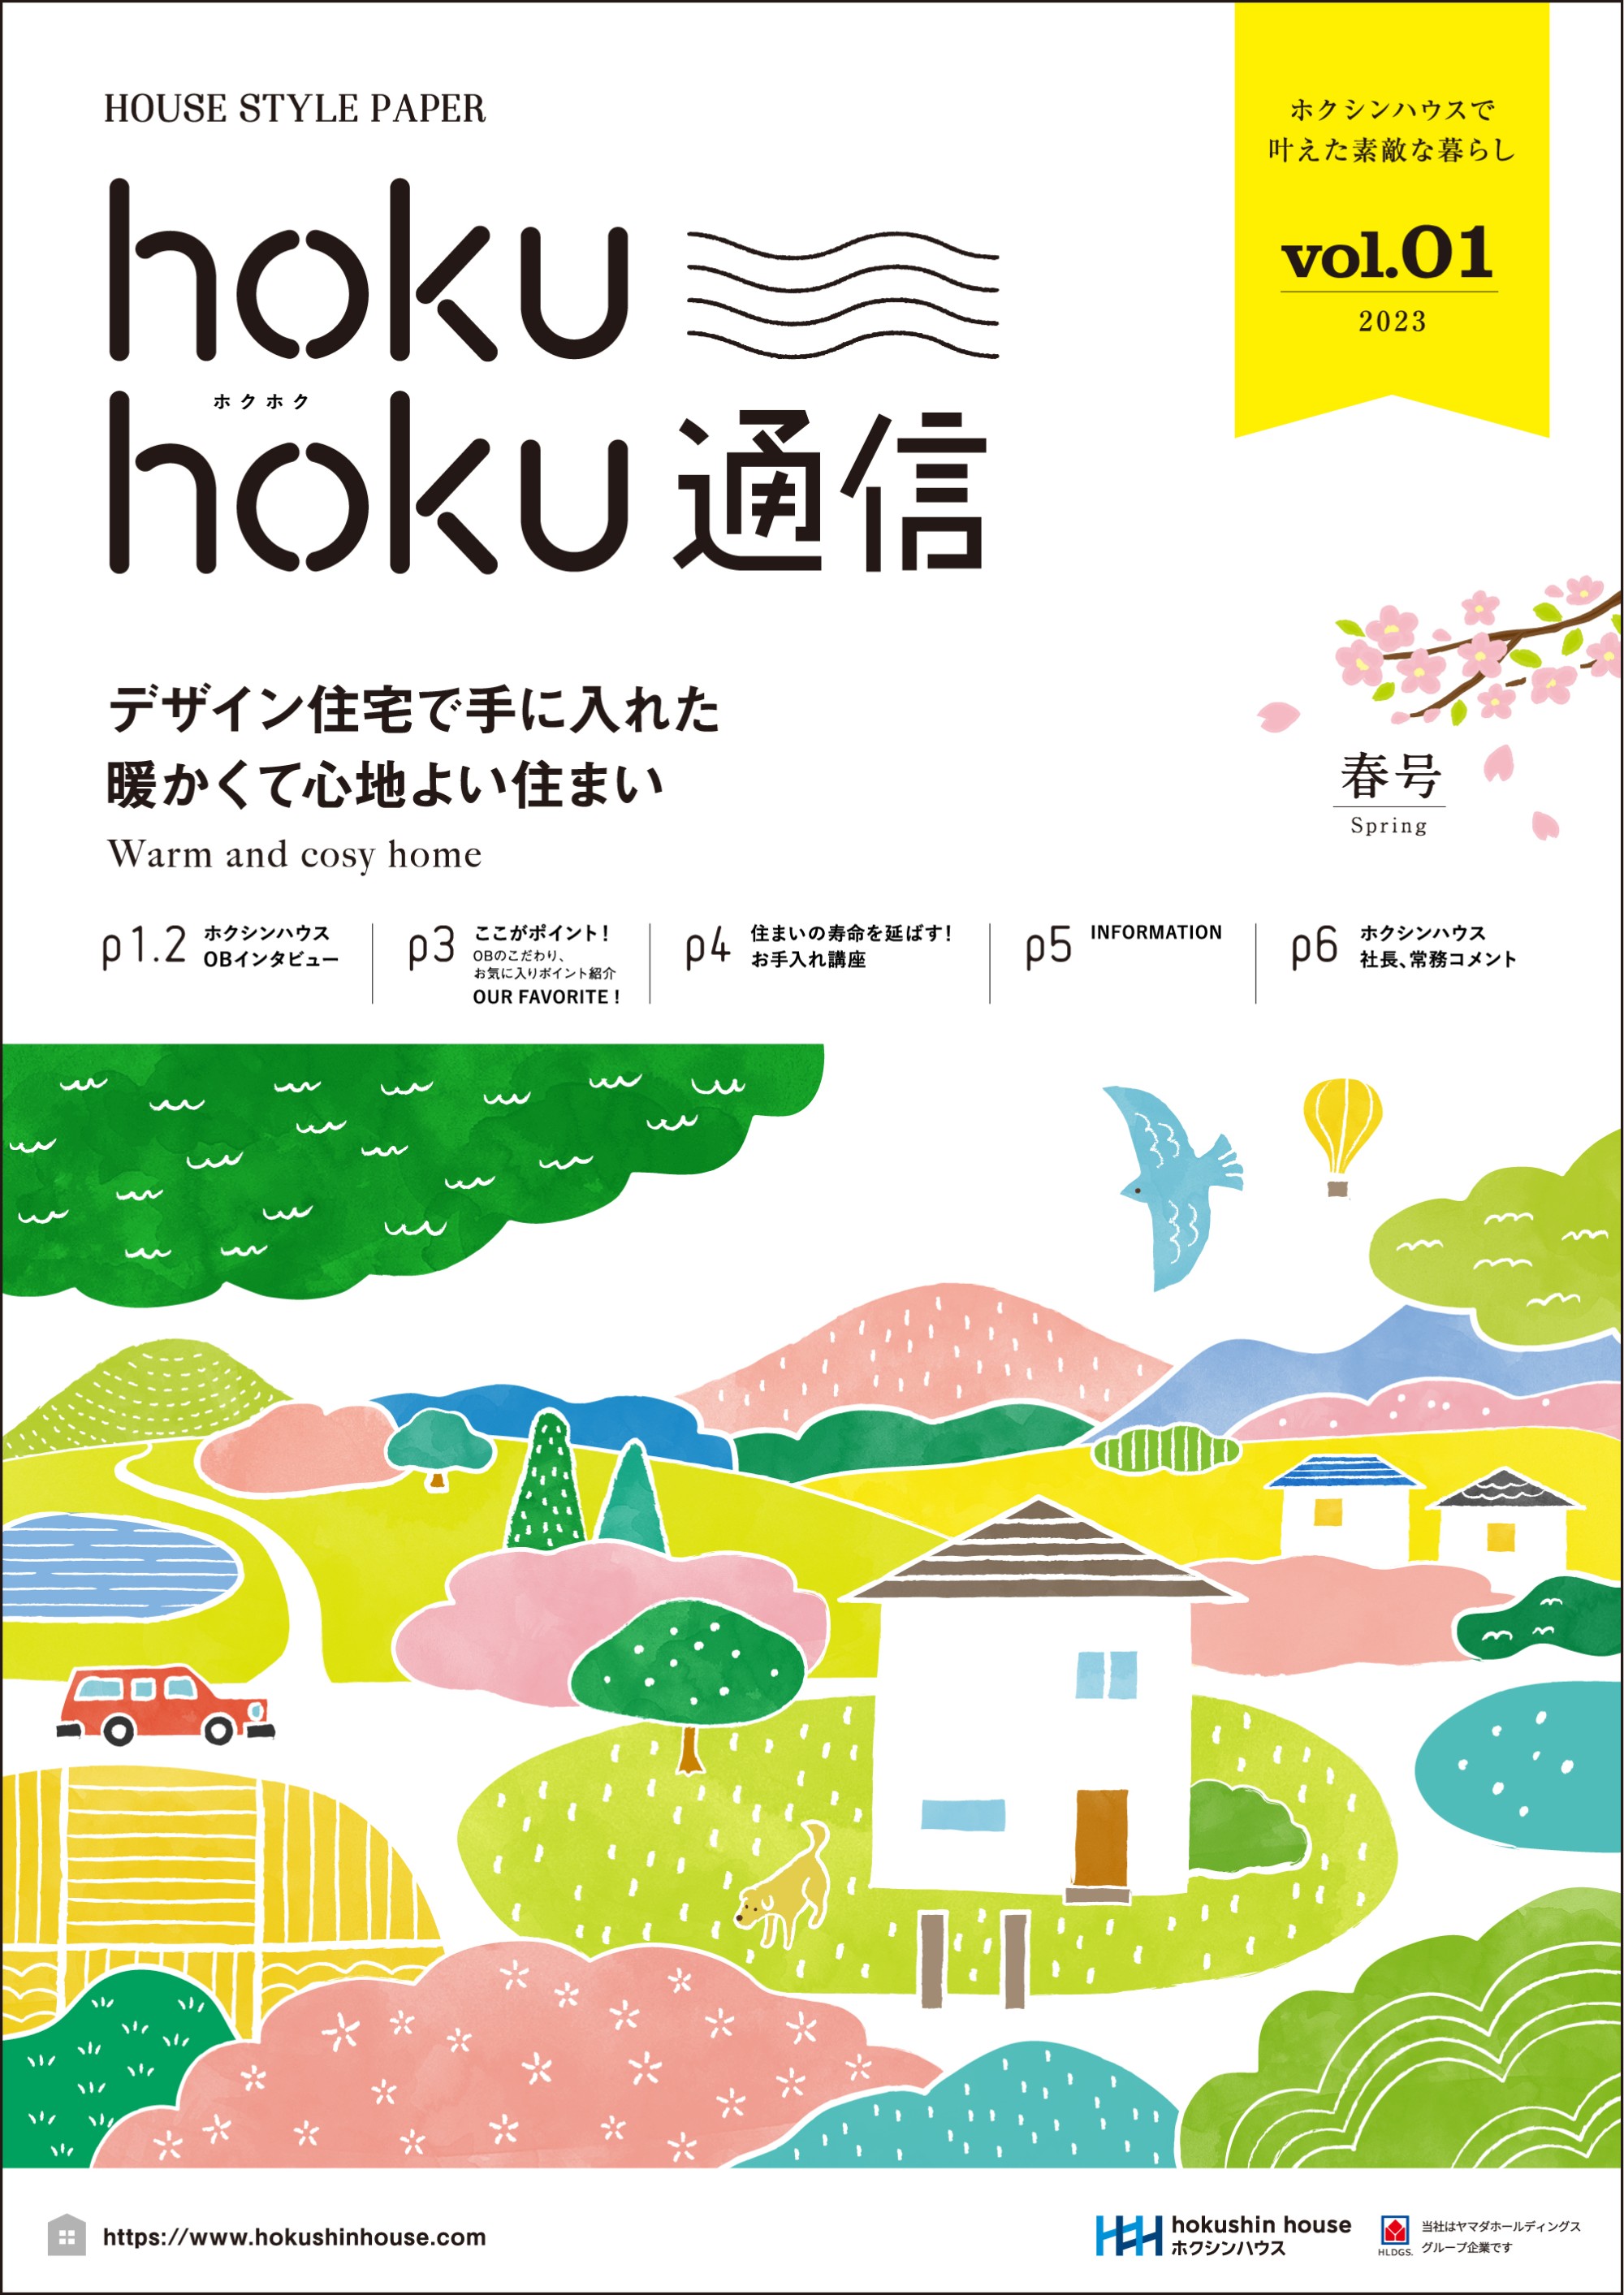 オーナーさまのための季刊誌「hoku hoku 通信」vol.1を発行いたしました。